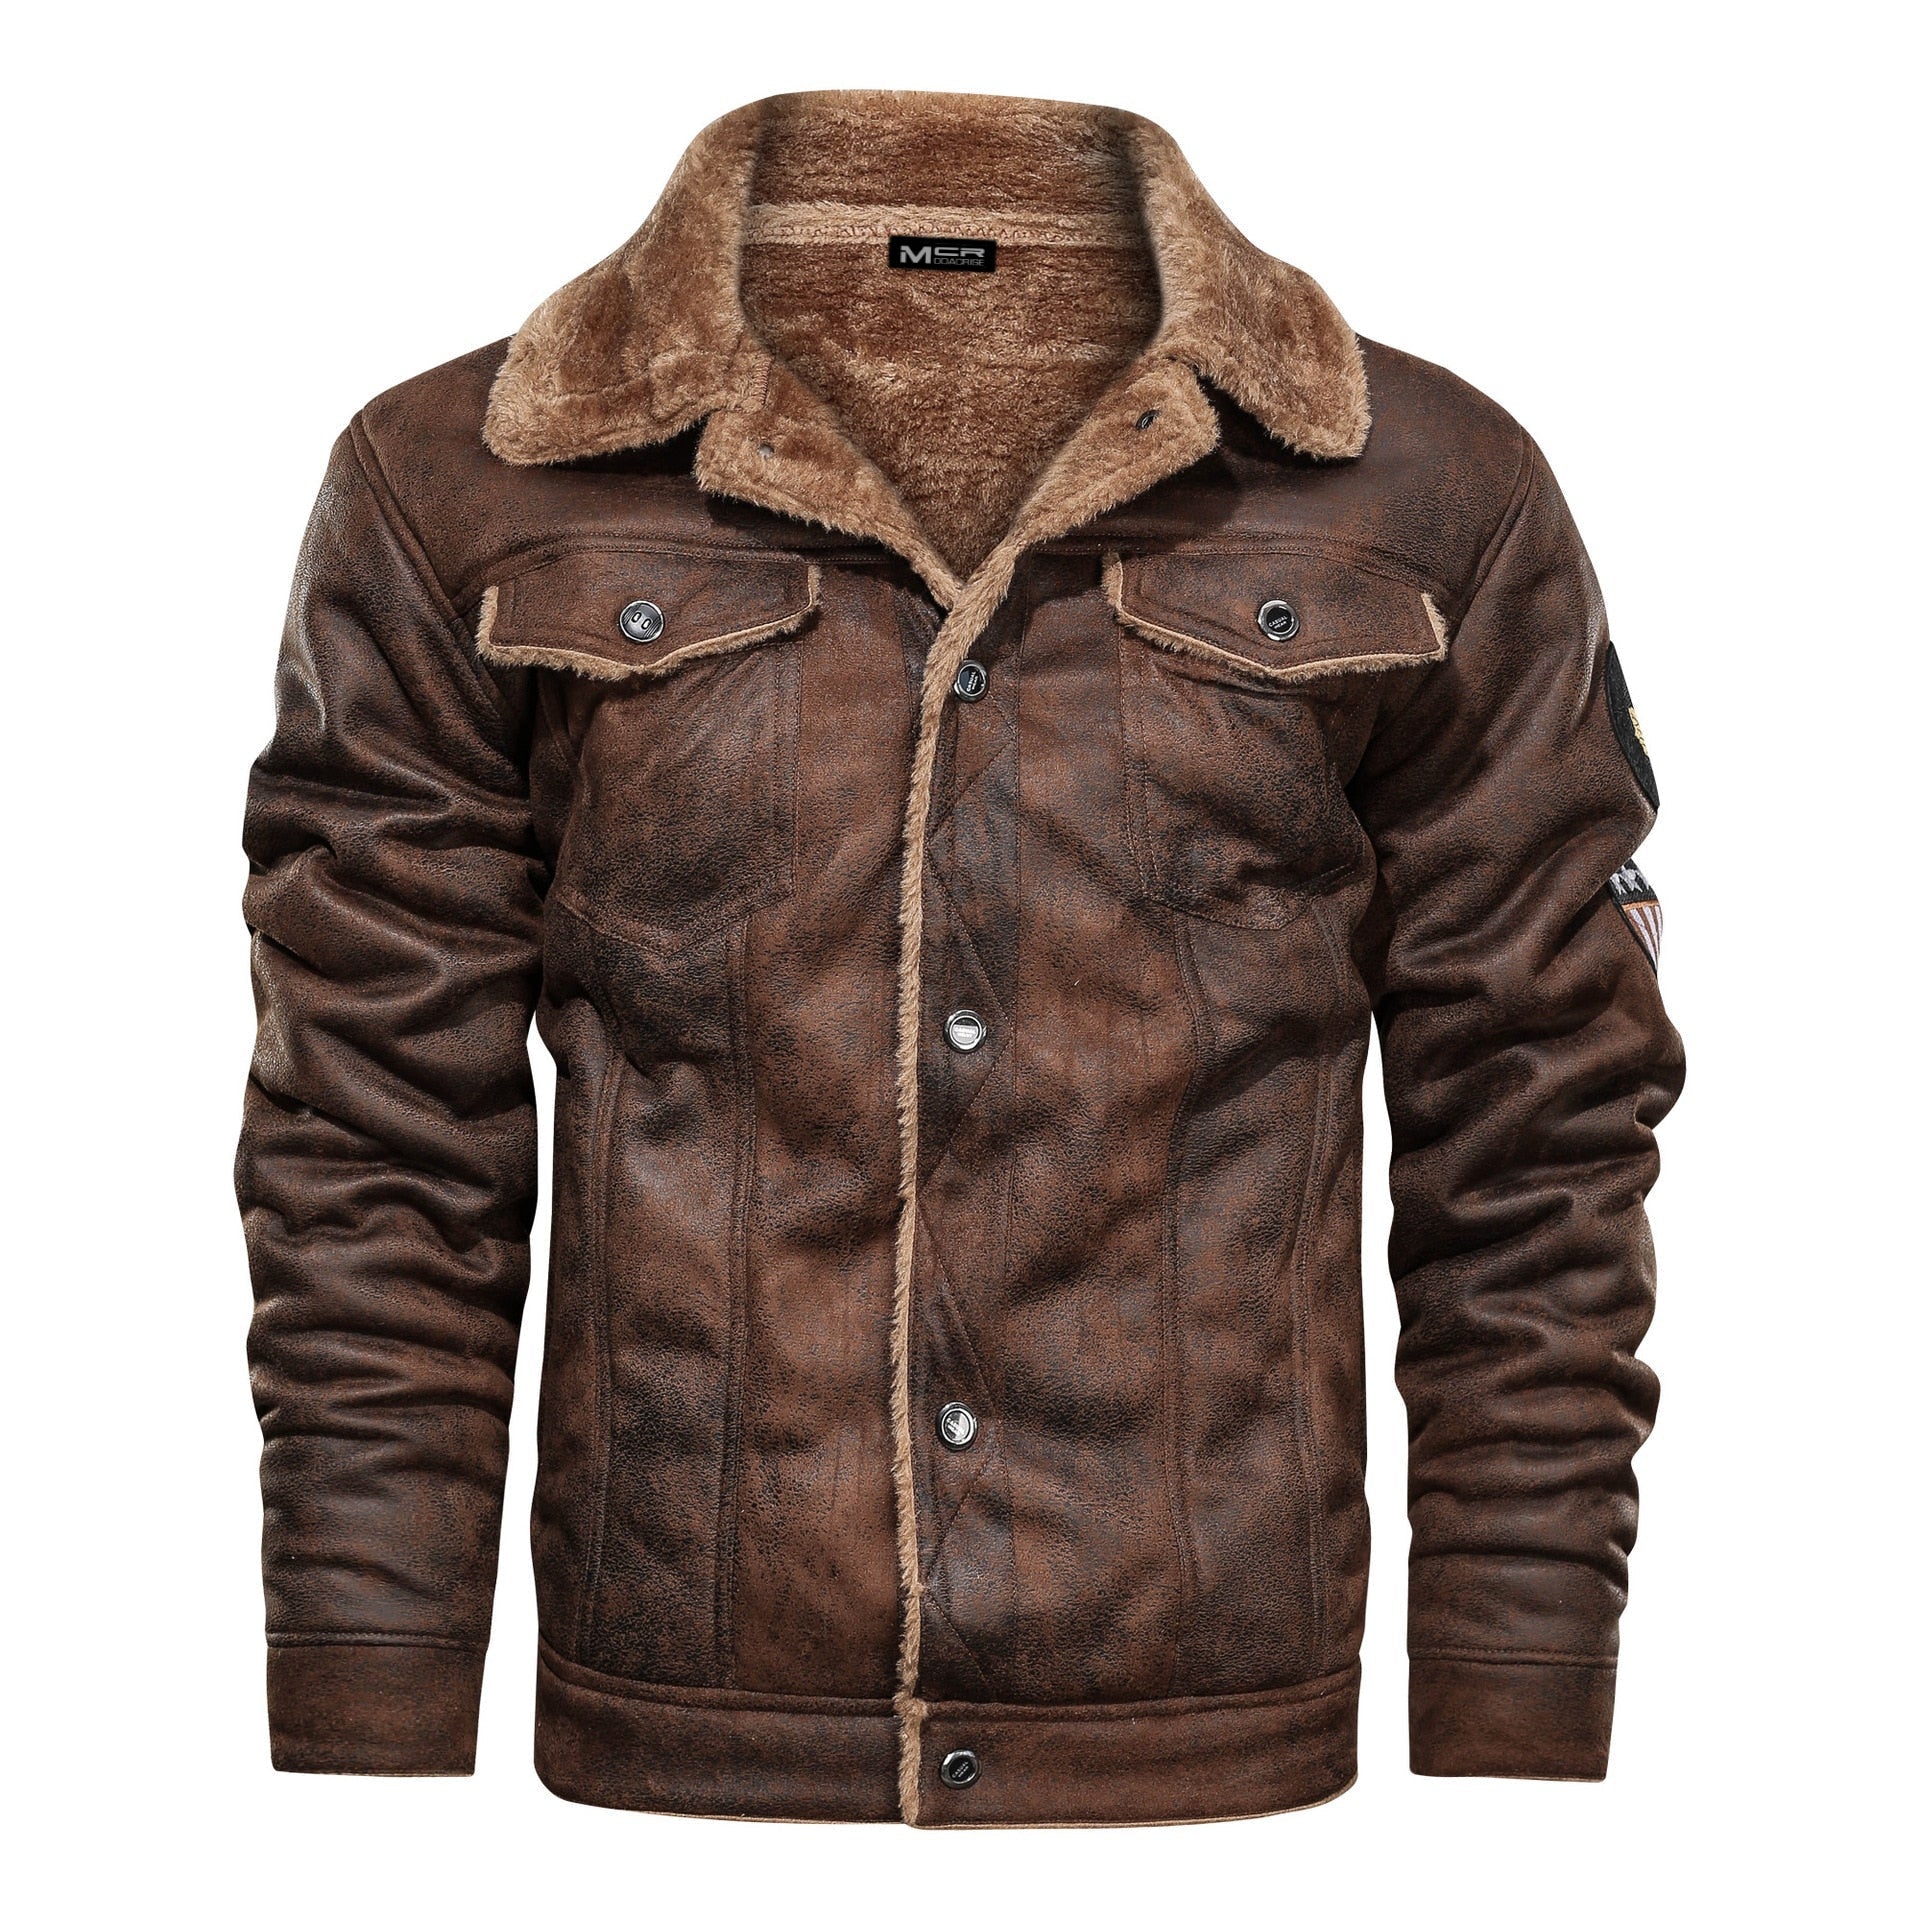 'Kronos' Leather Jacket